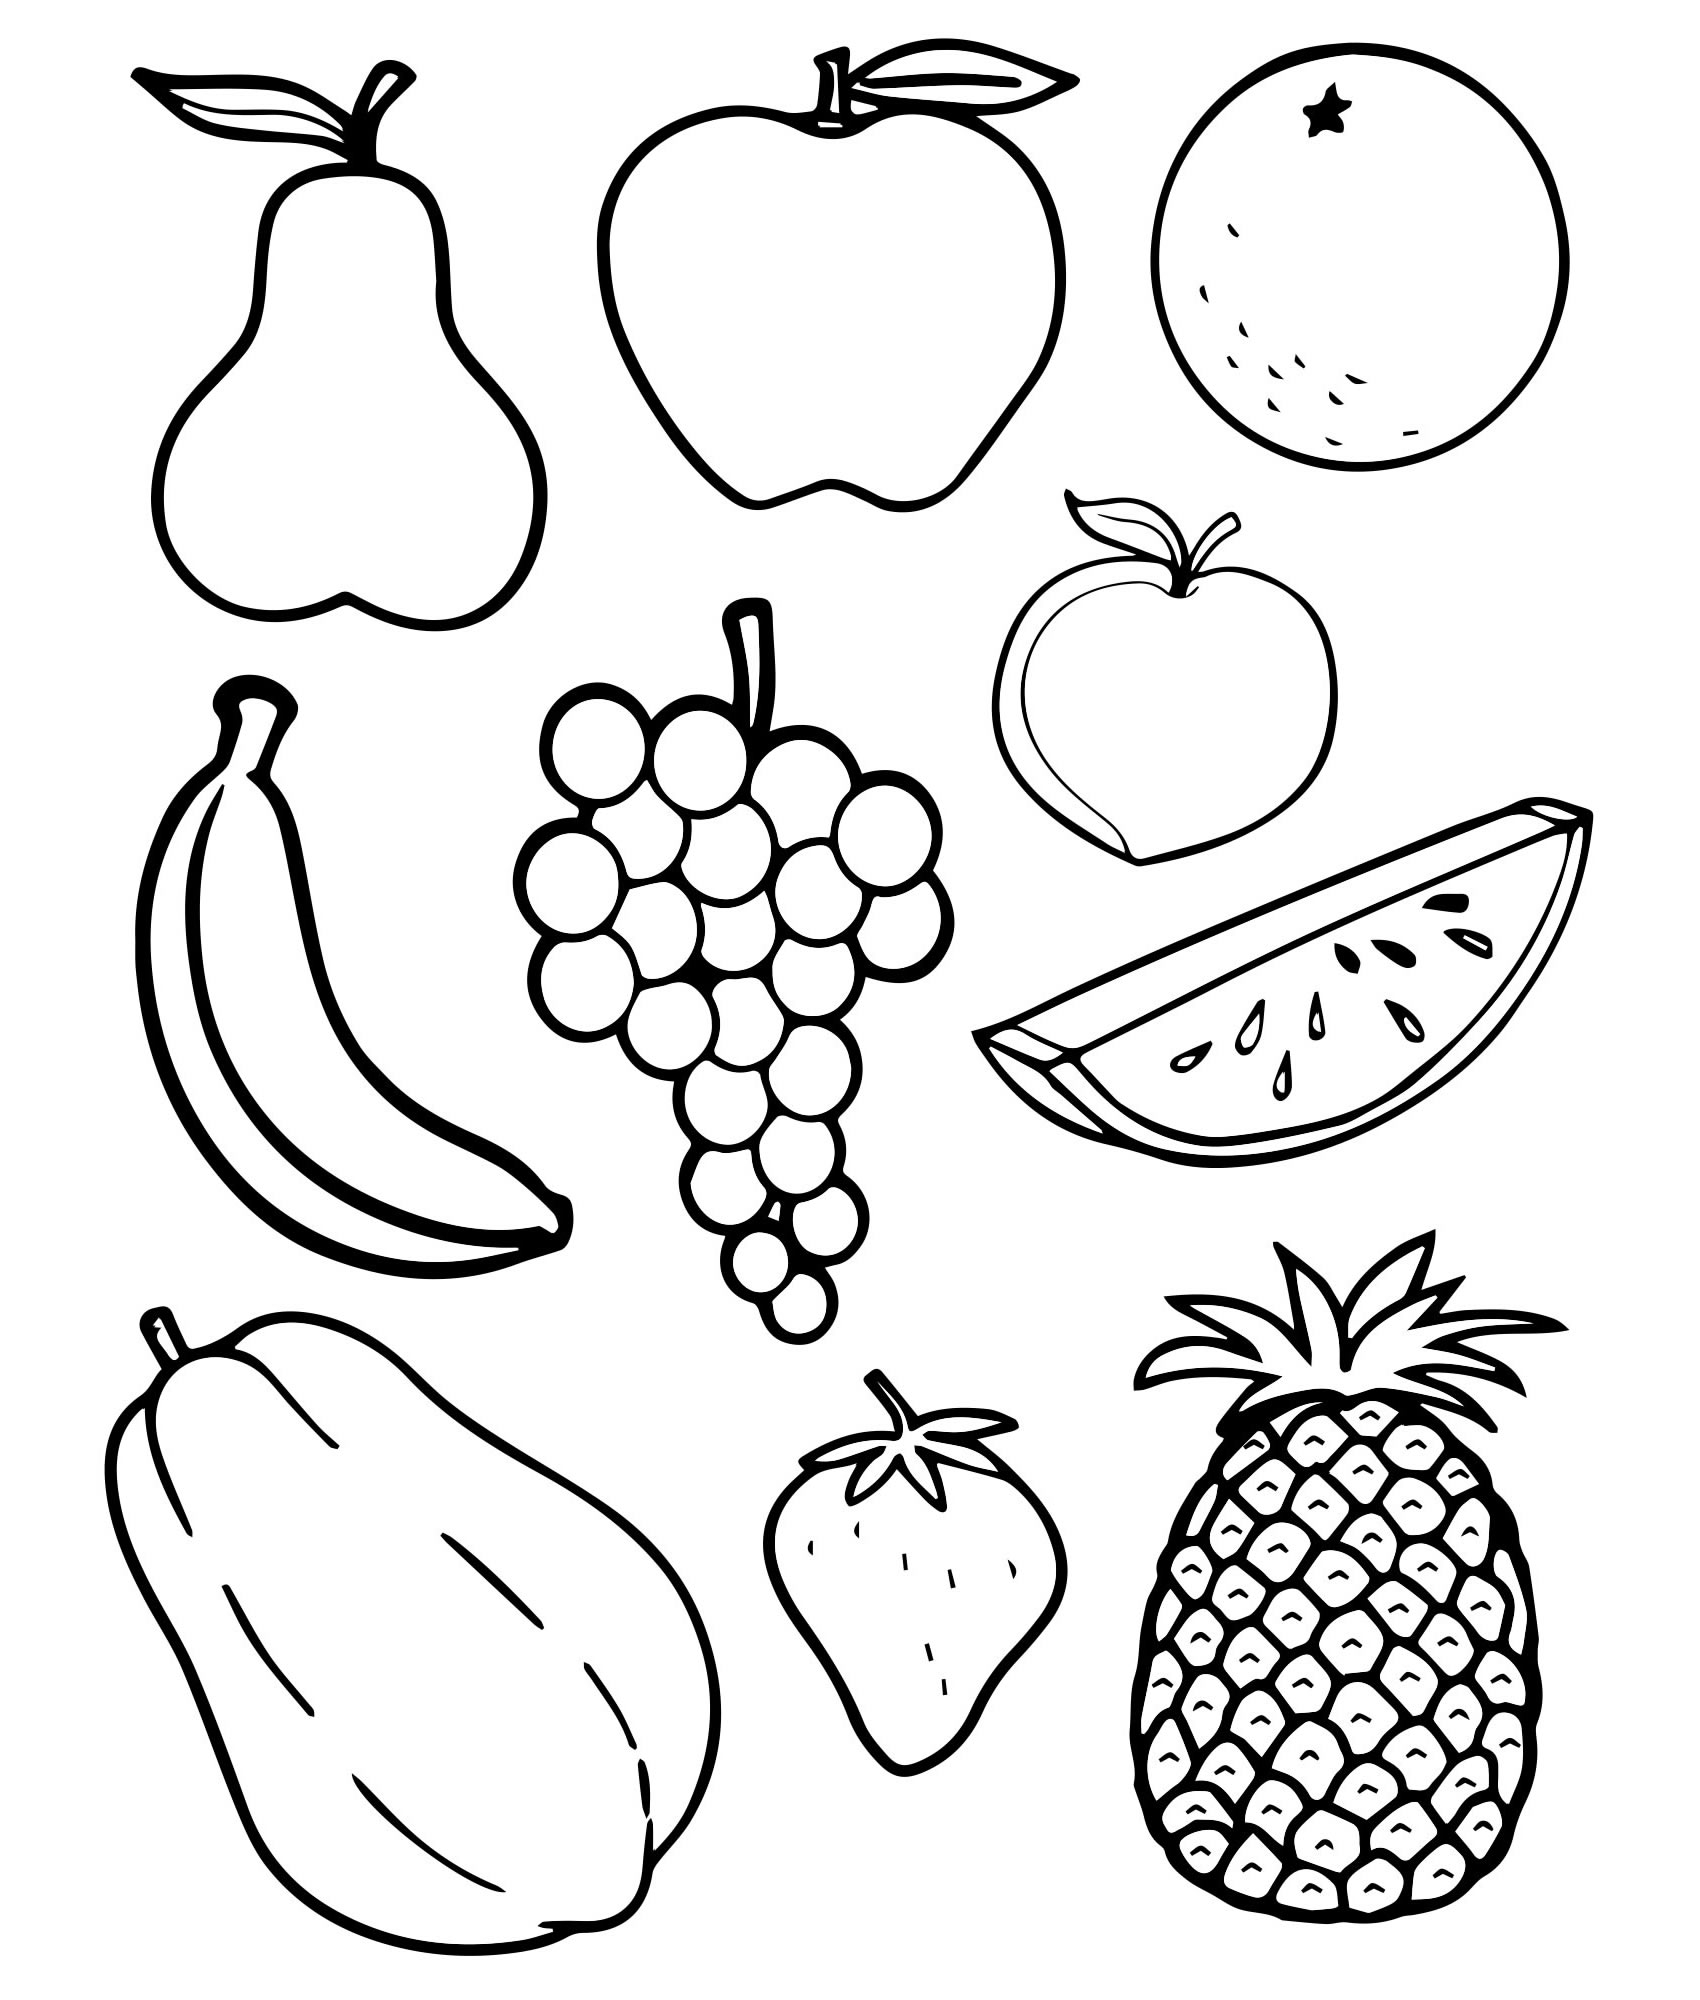 Раскраска овощи и фрукты